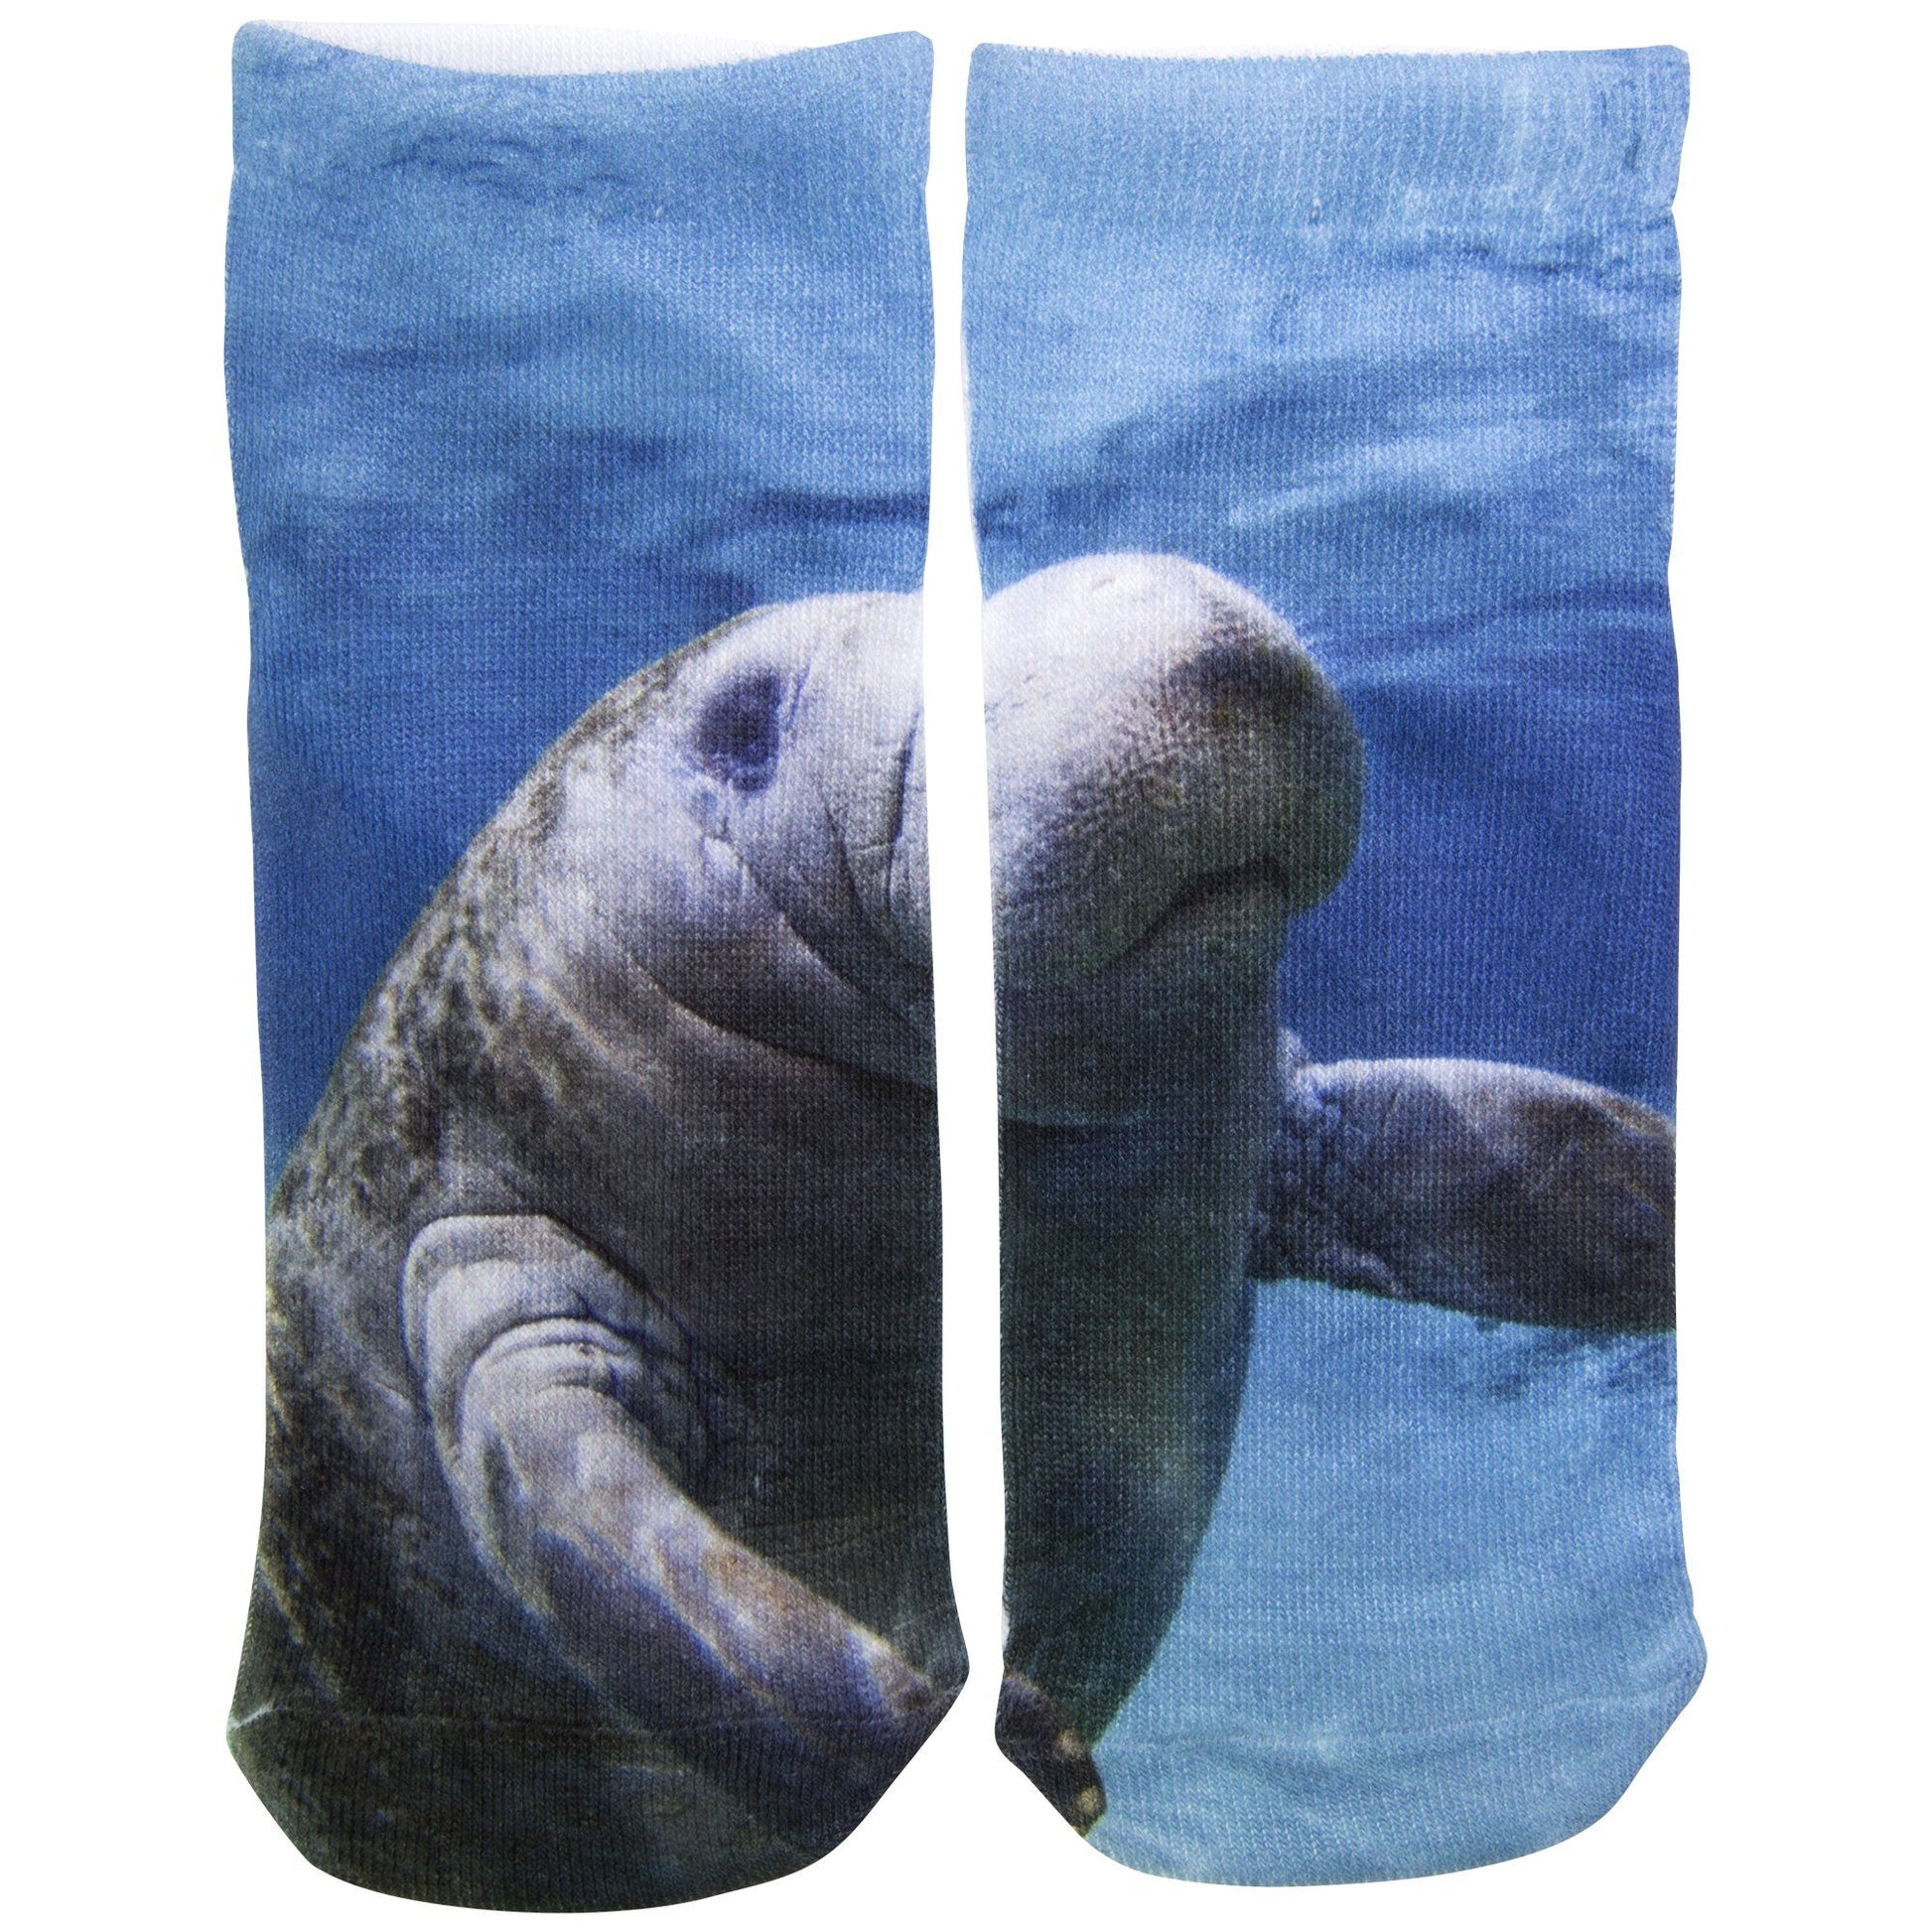 Under The Sea Socks